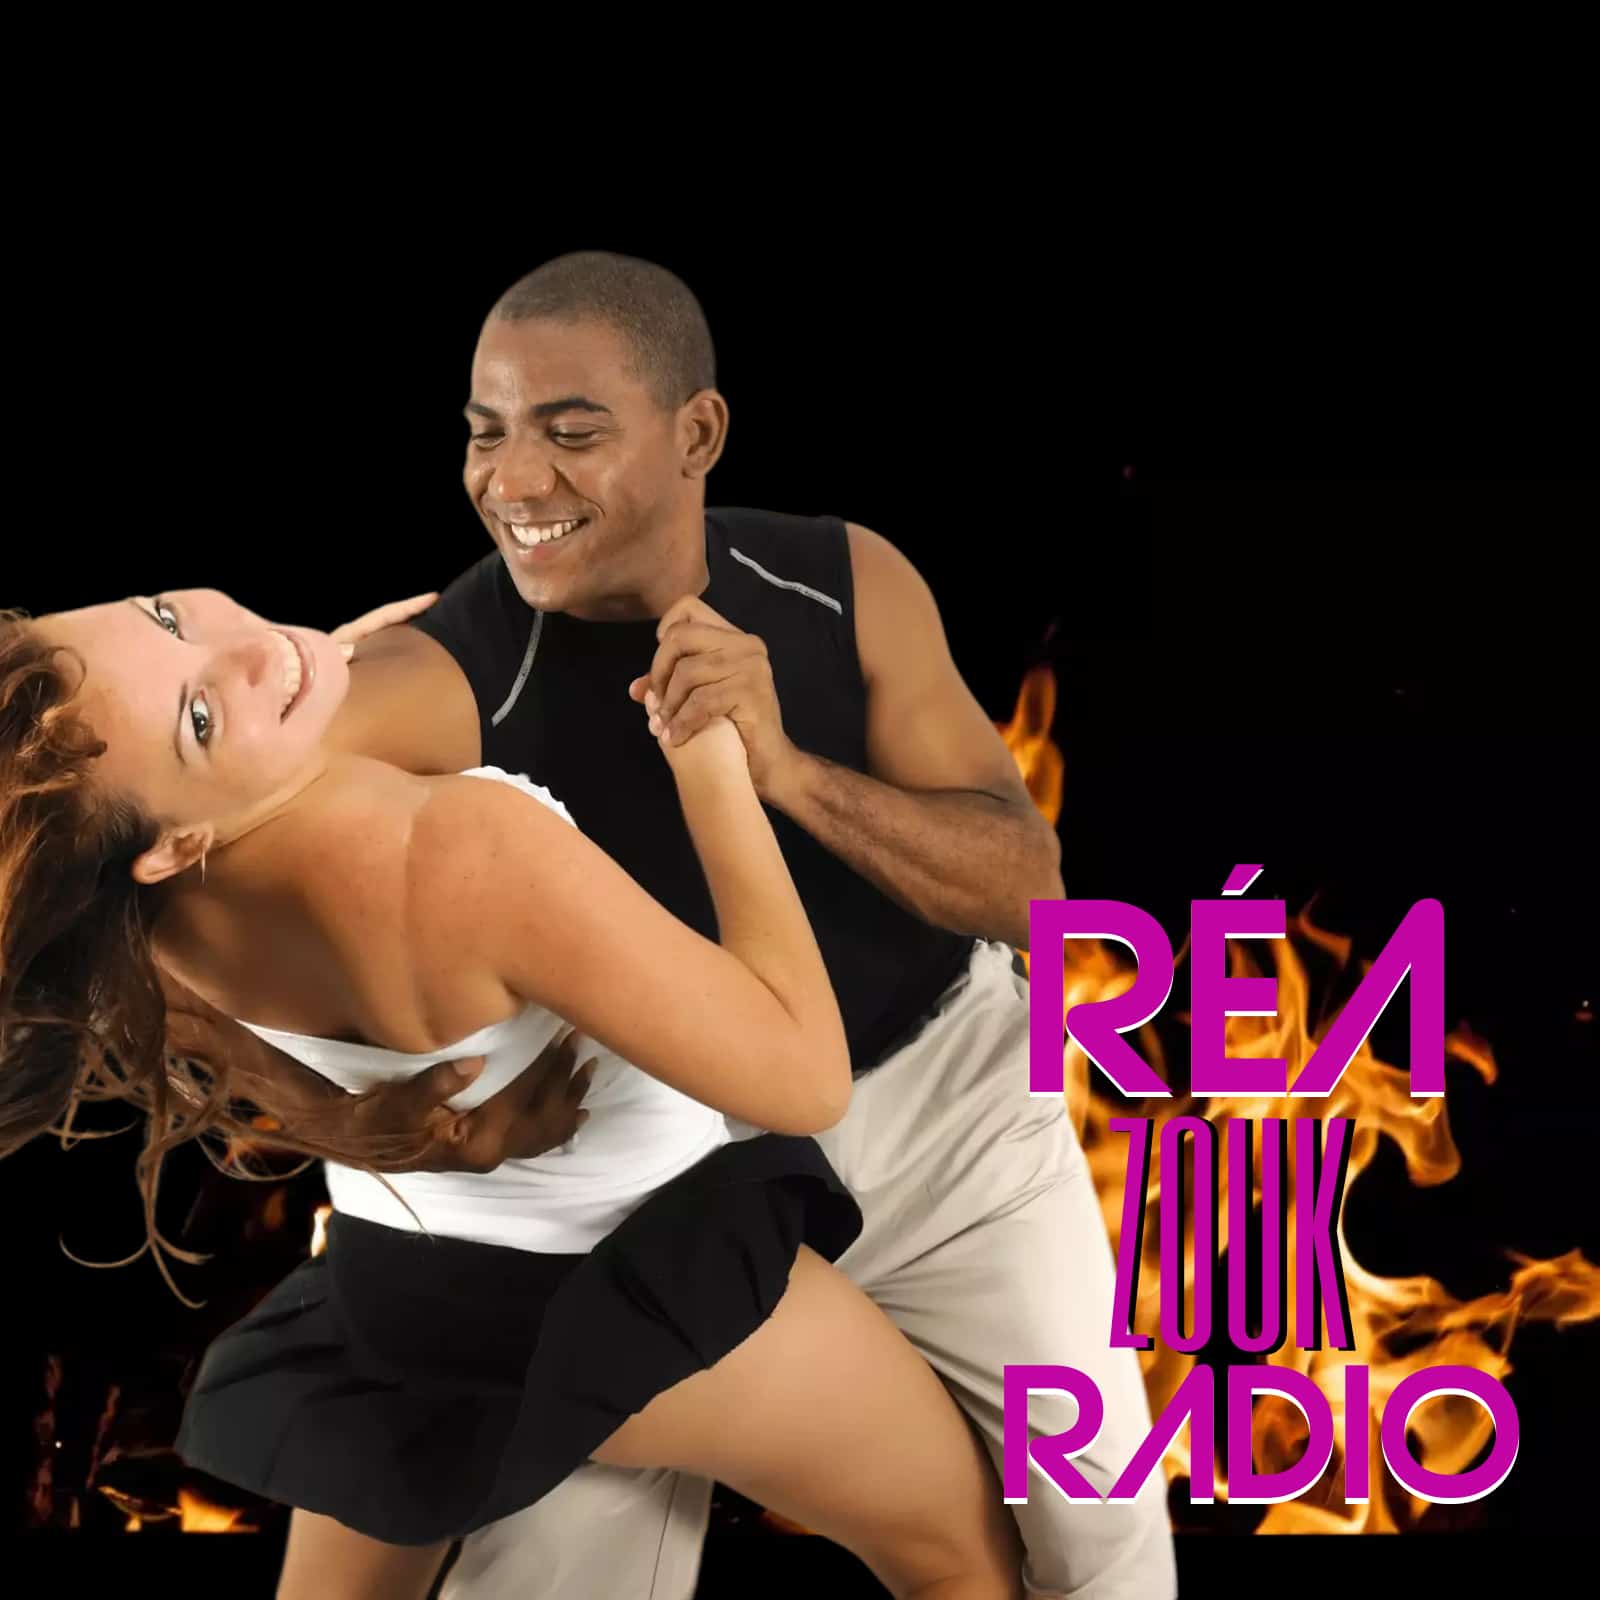 Radio Réa Zouk